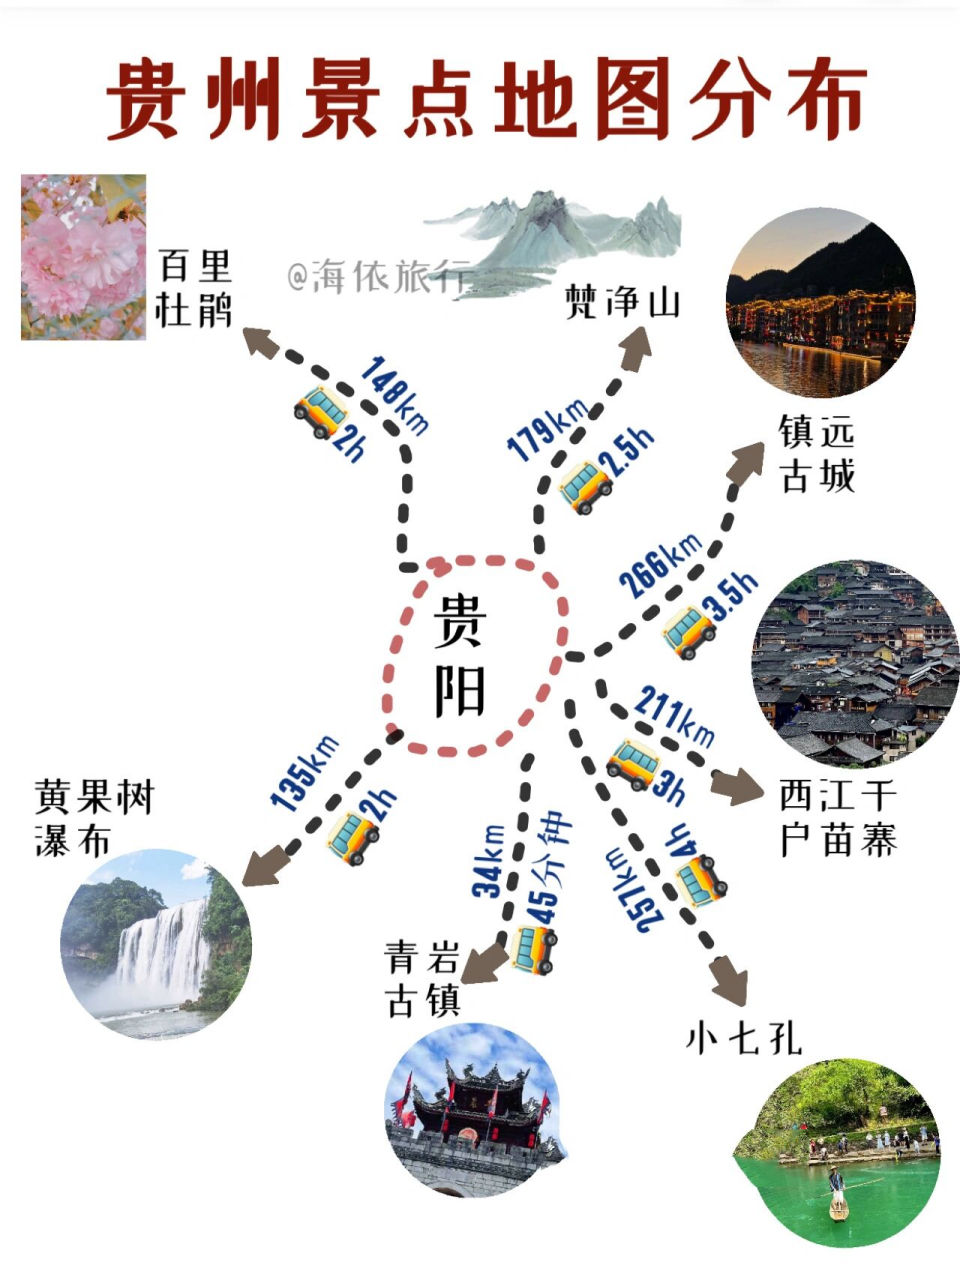 贵州旅游攻略73手绘旅游地图99景点干货 最近有很多小伙伴问第一